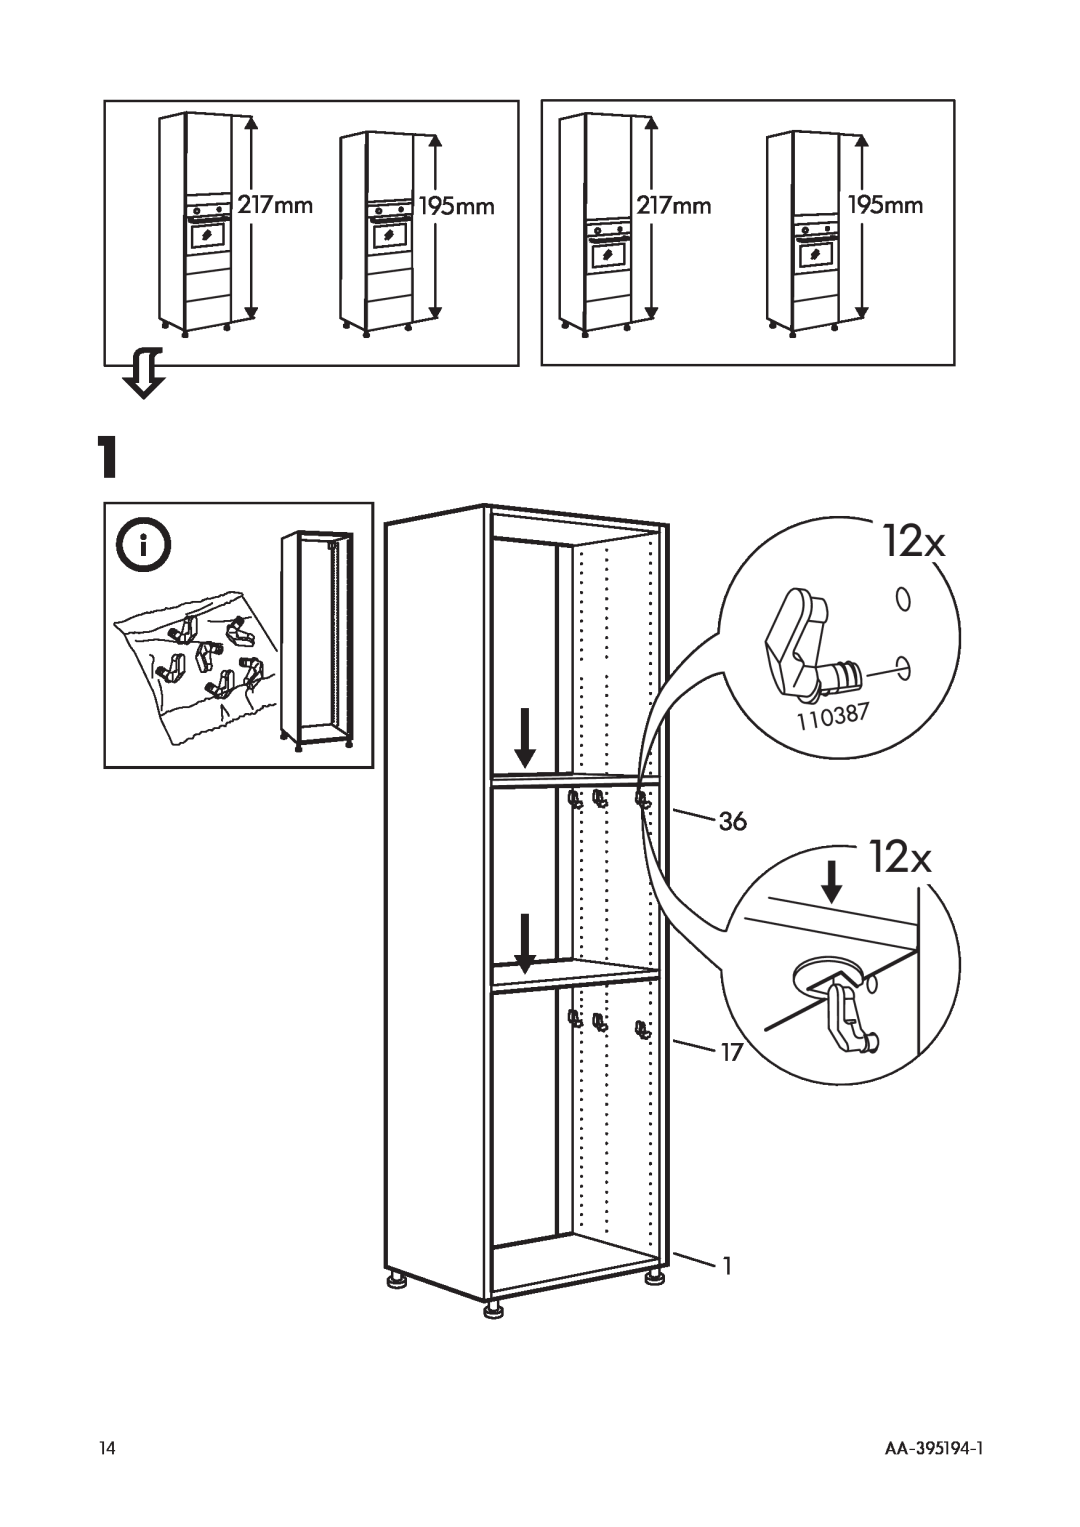 IKEA OV3 manual 12x, 217mm, 195mm, AA-395194-1 